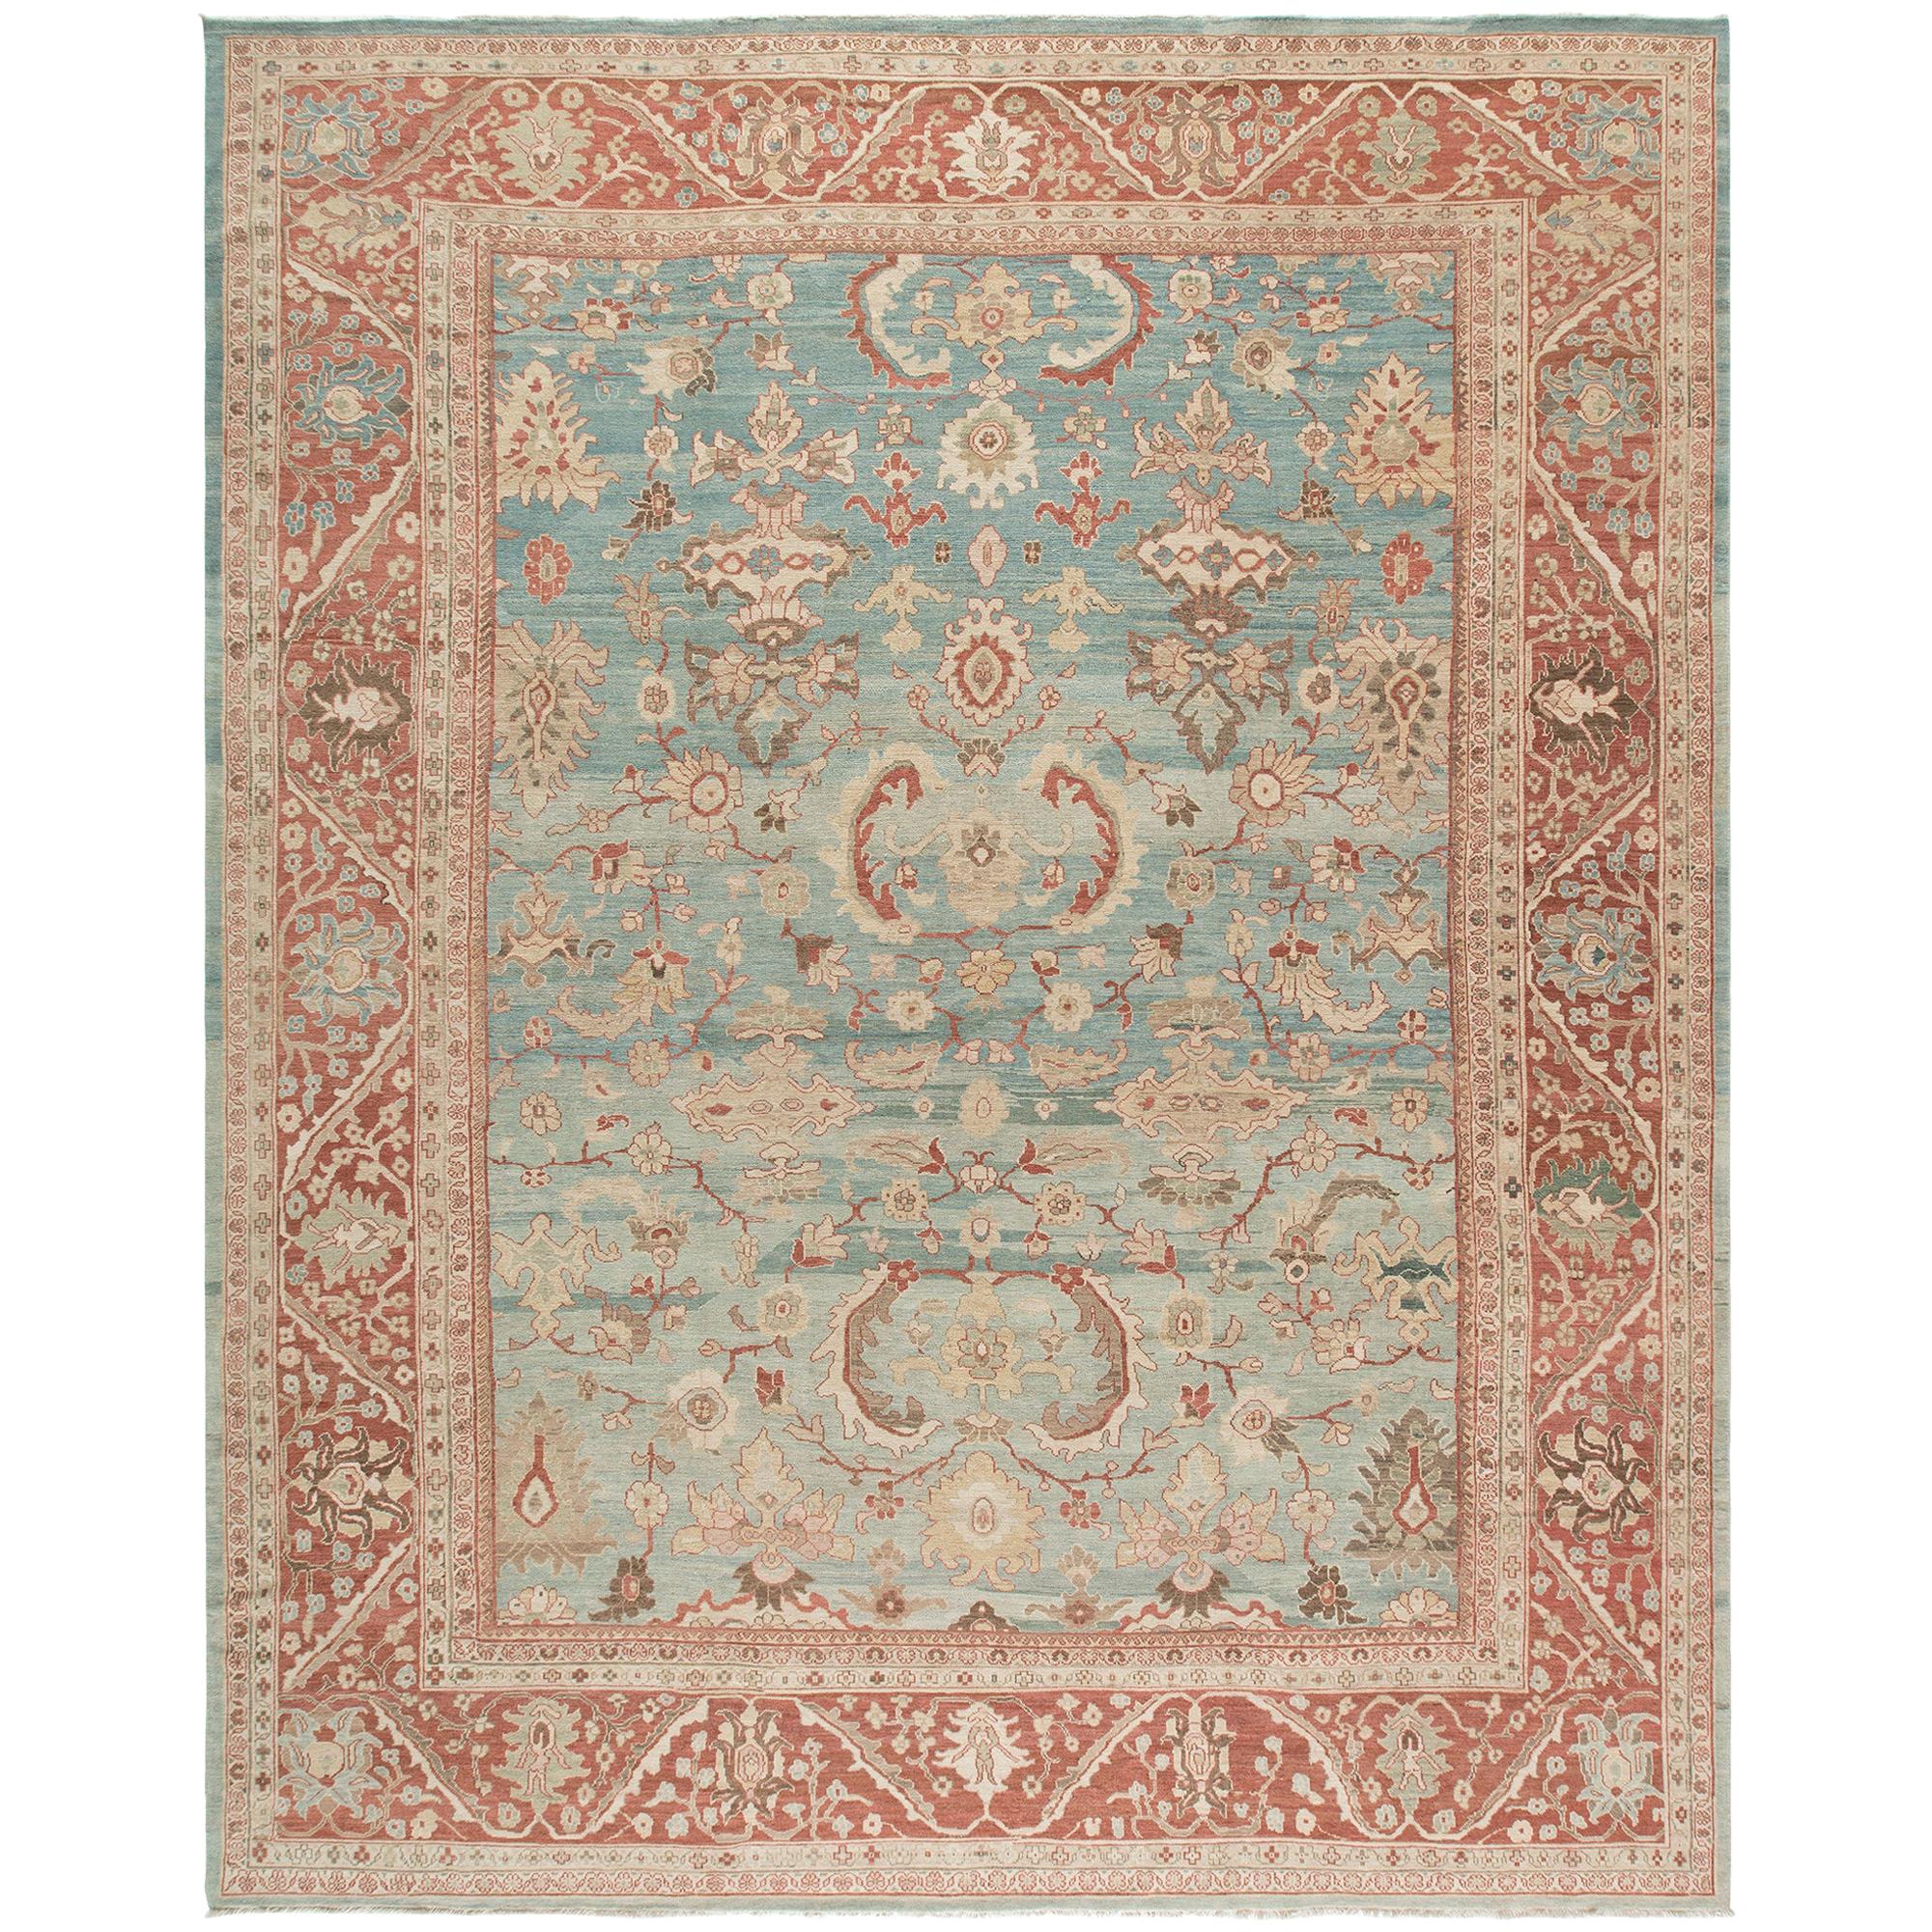 Original Persischer Ziegler Sultanabad Handgeknüpfter Teppich in Kamel:: Blau und Rot